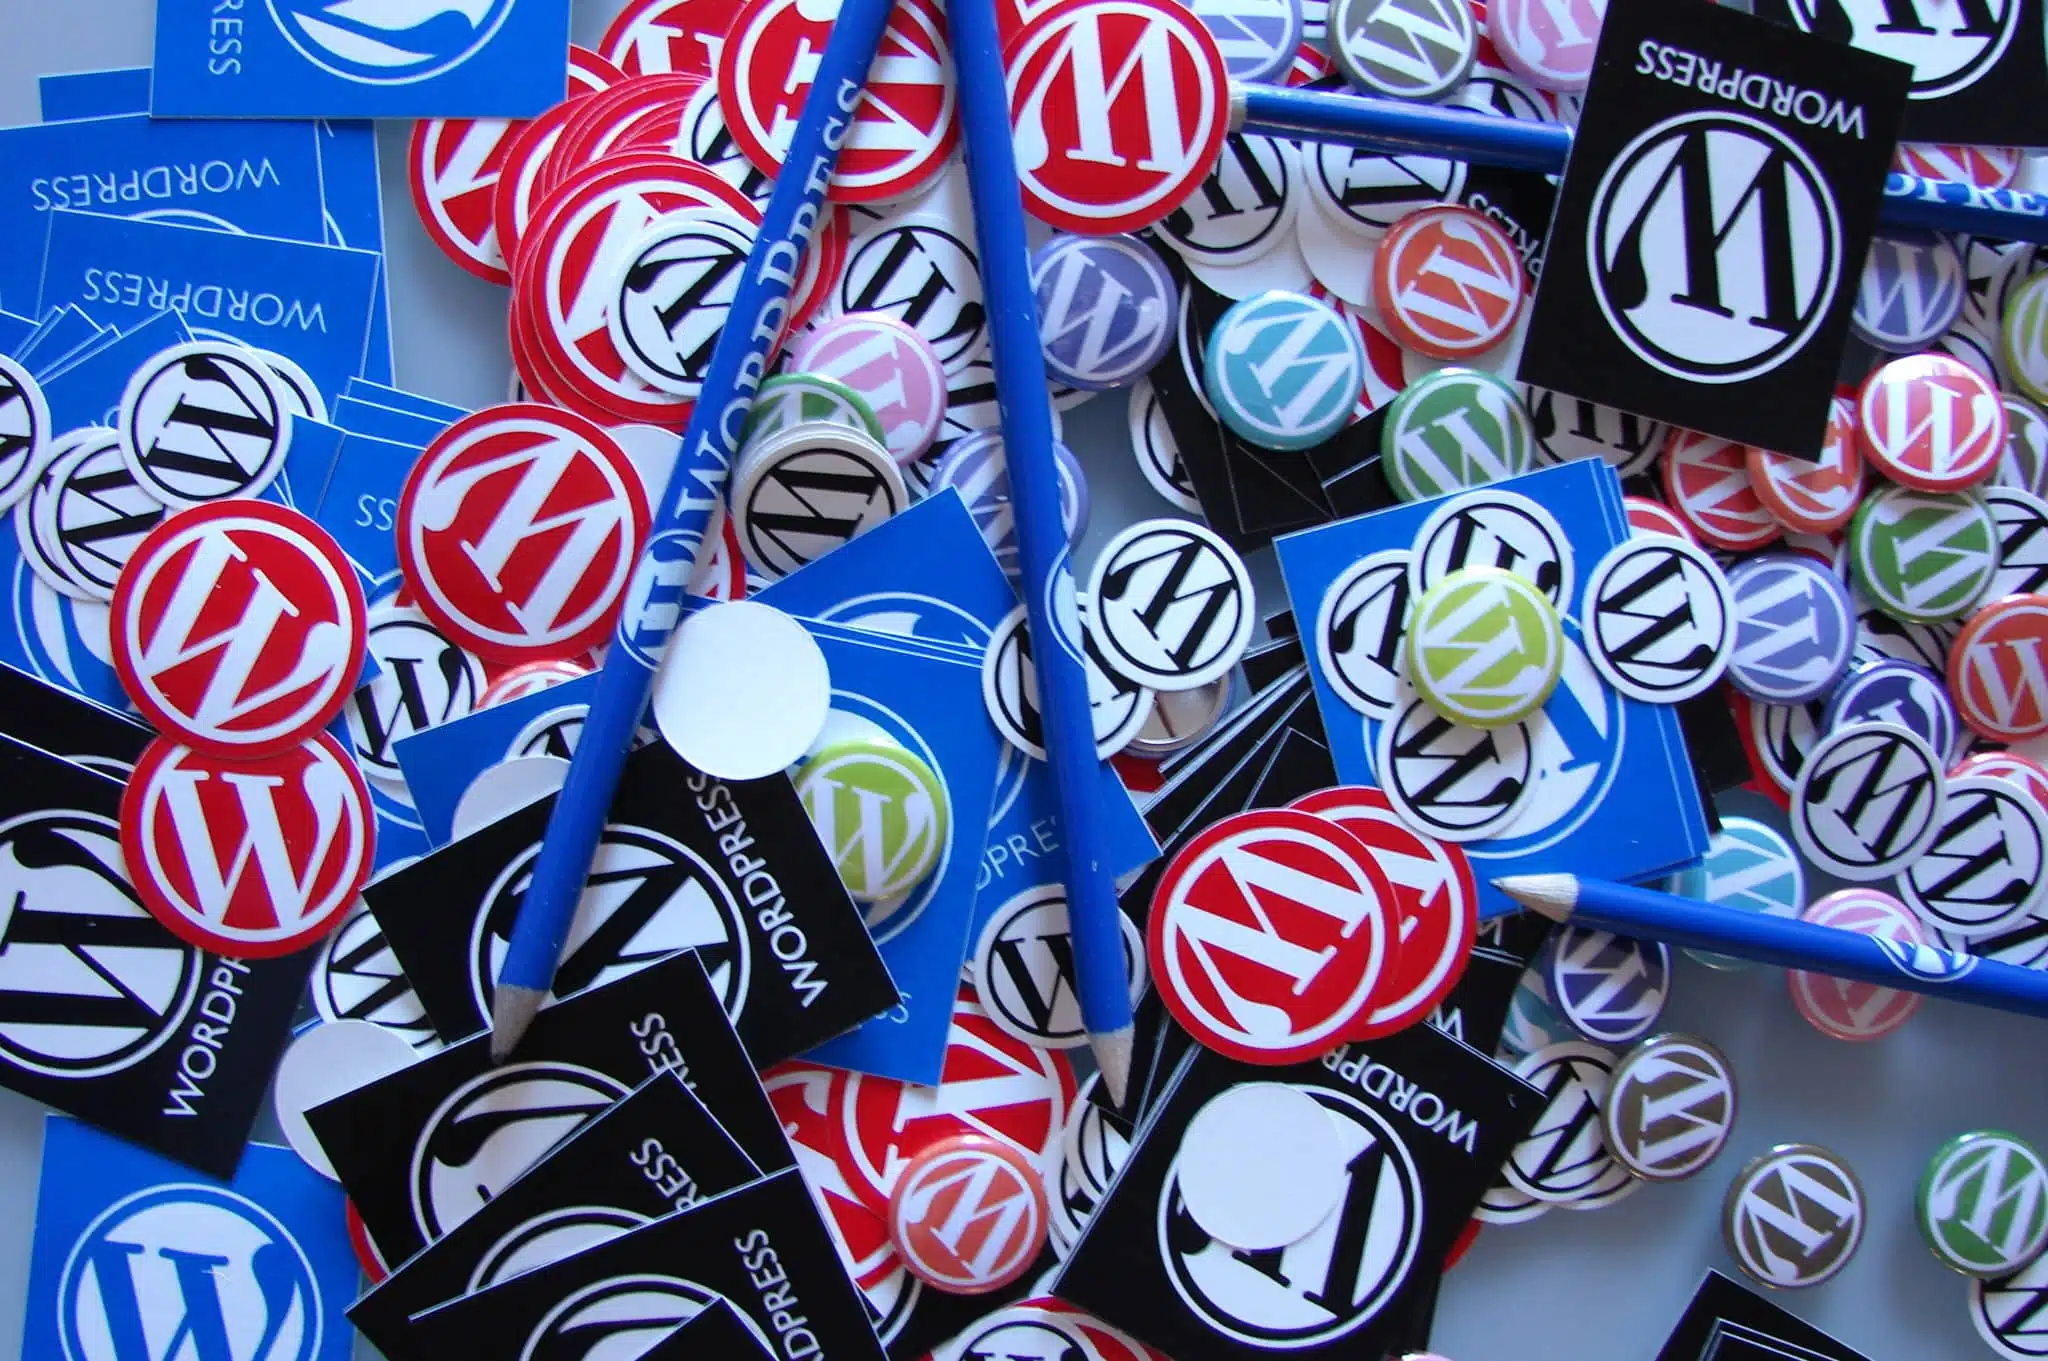 Topbillede med wordpress badges